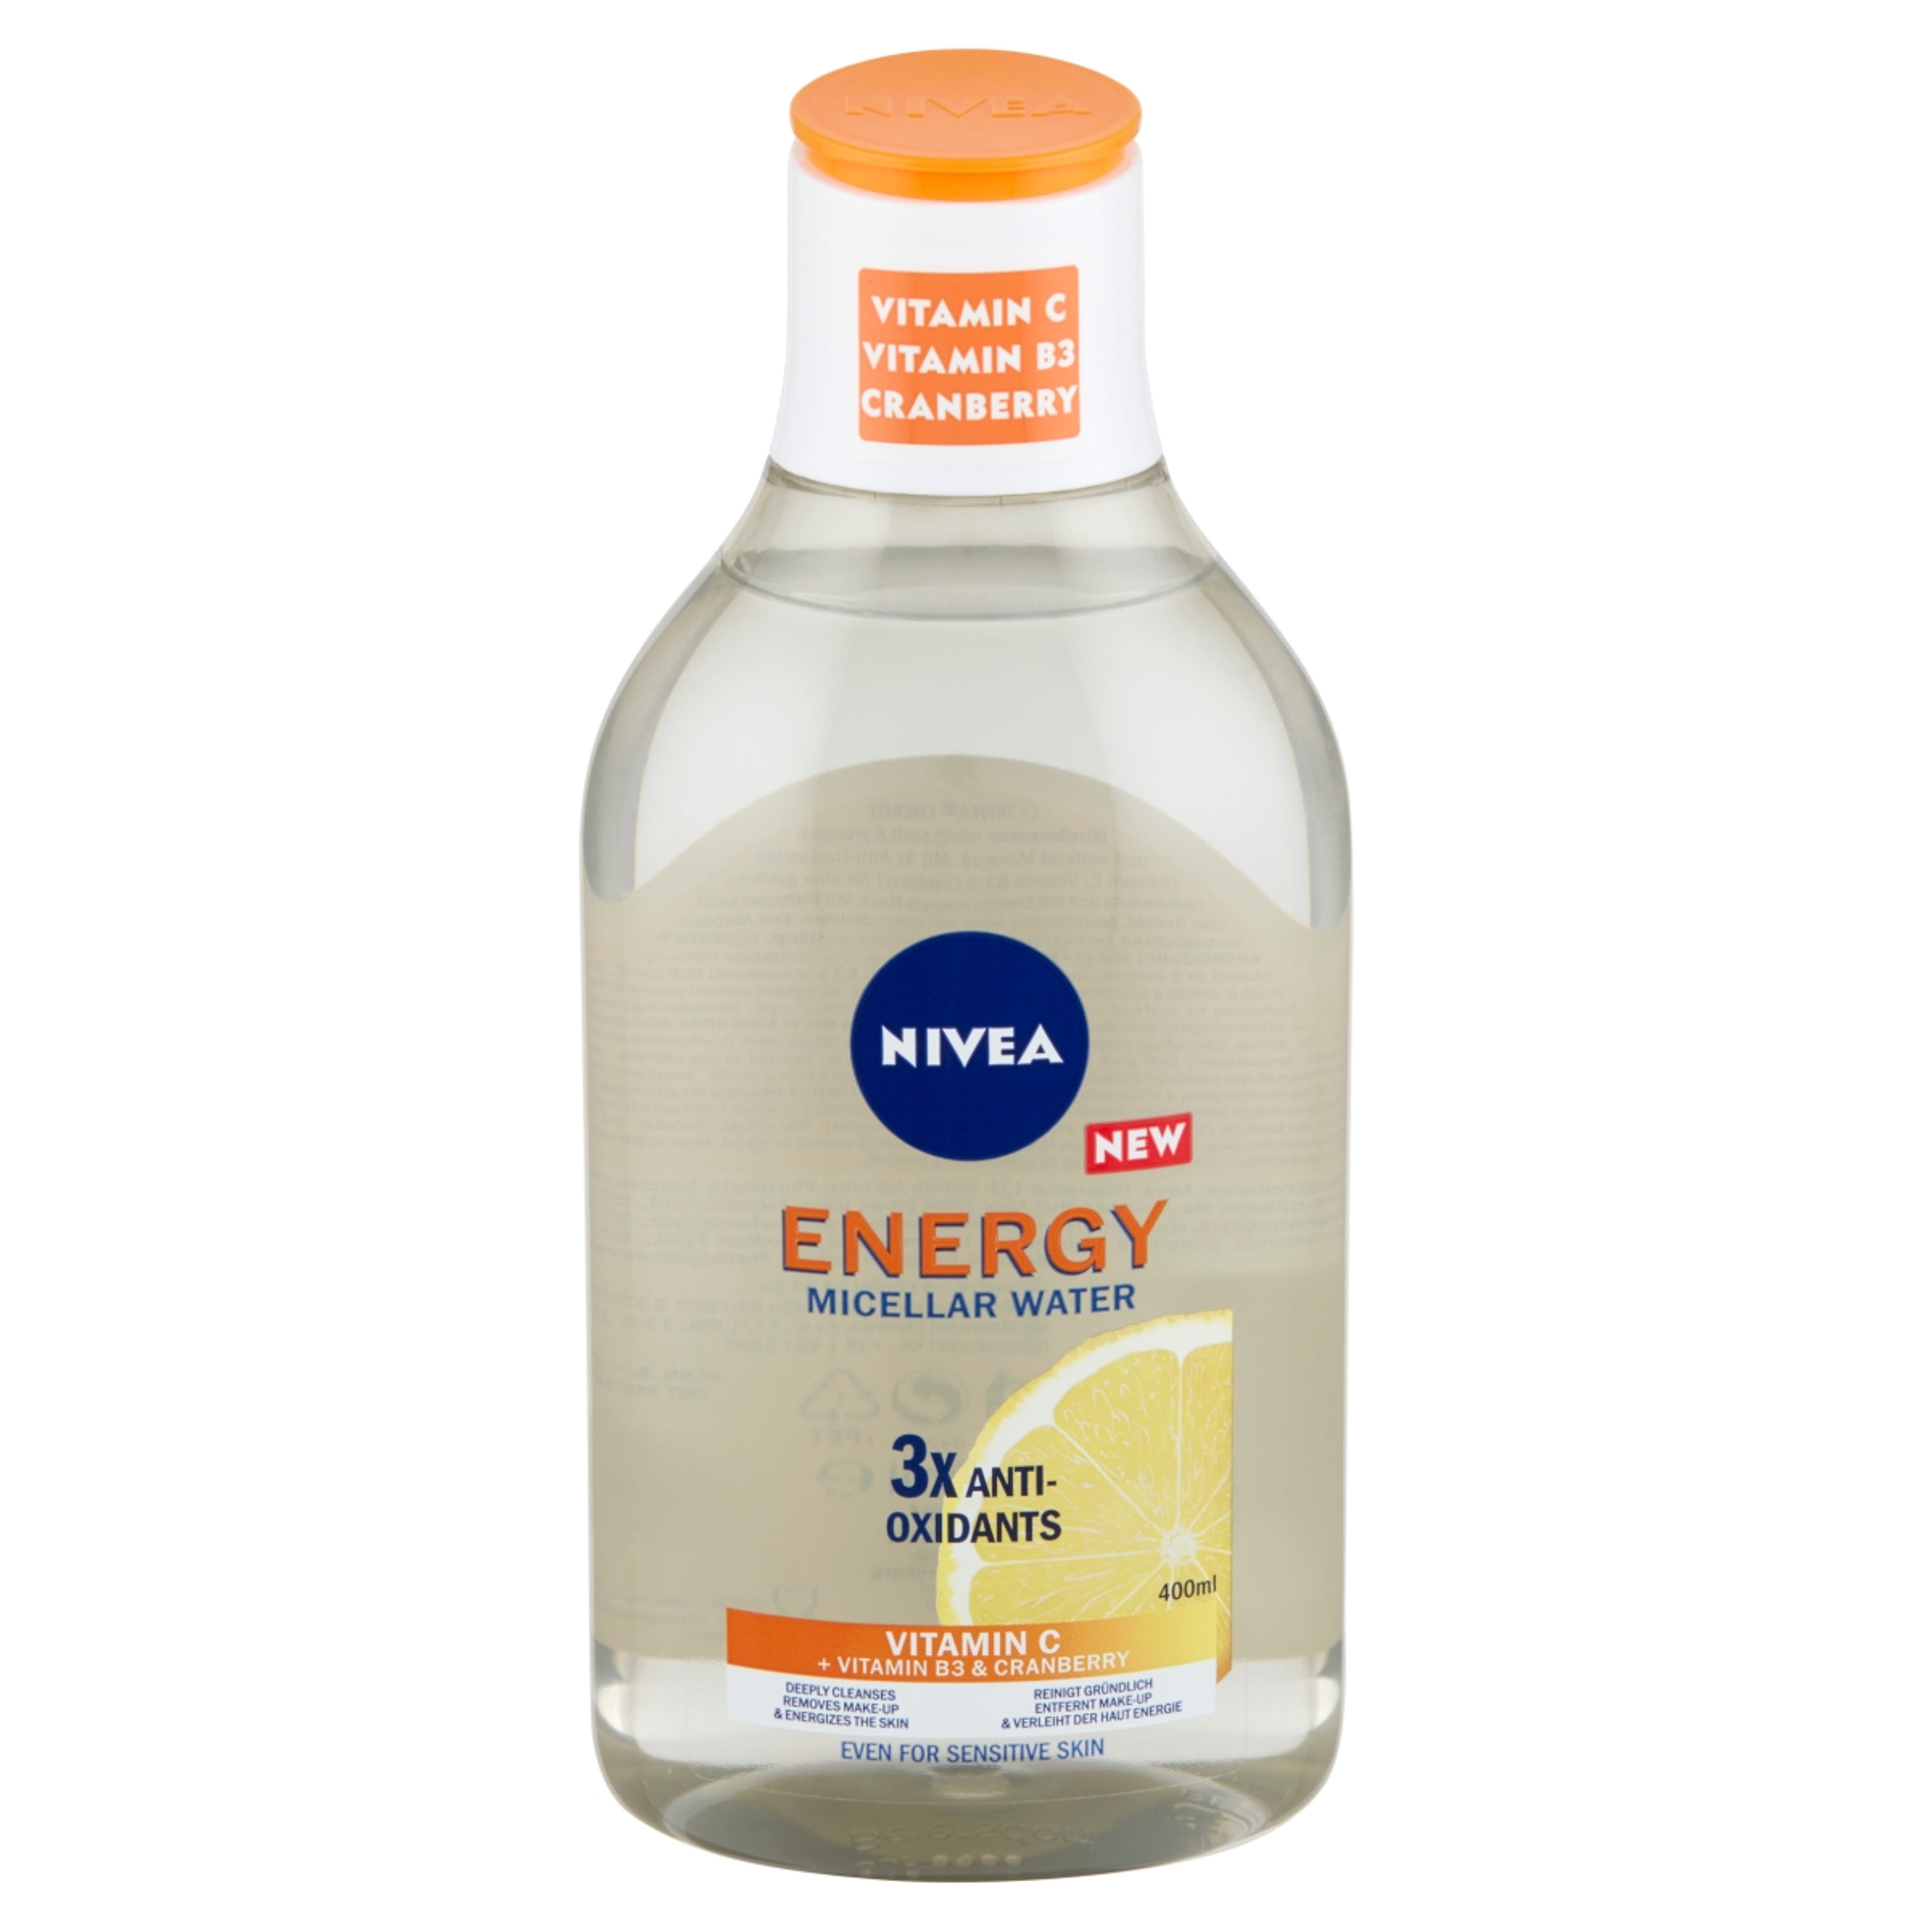 Nivea Energy micellás víz, c-vitaminnal - 400 ml-2